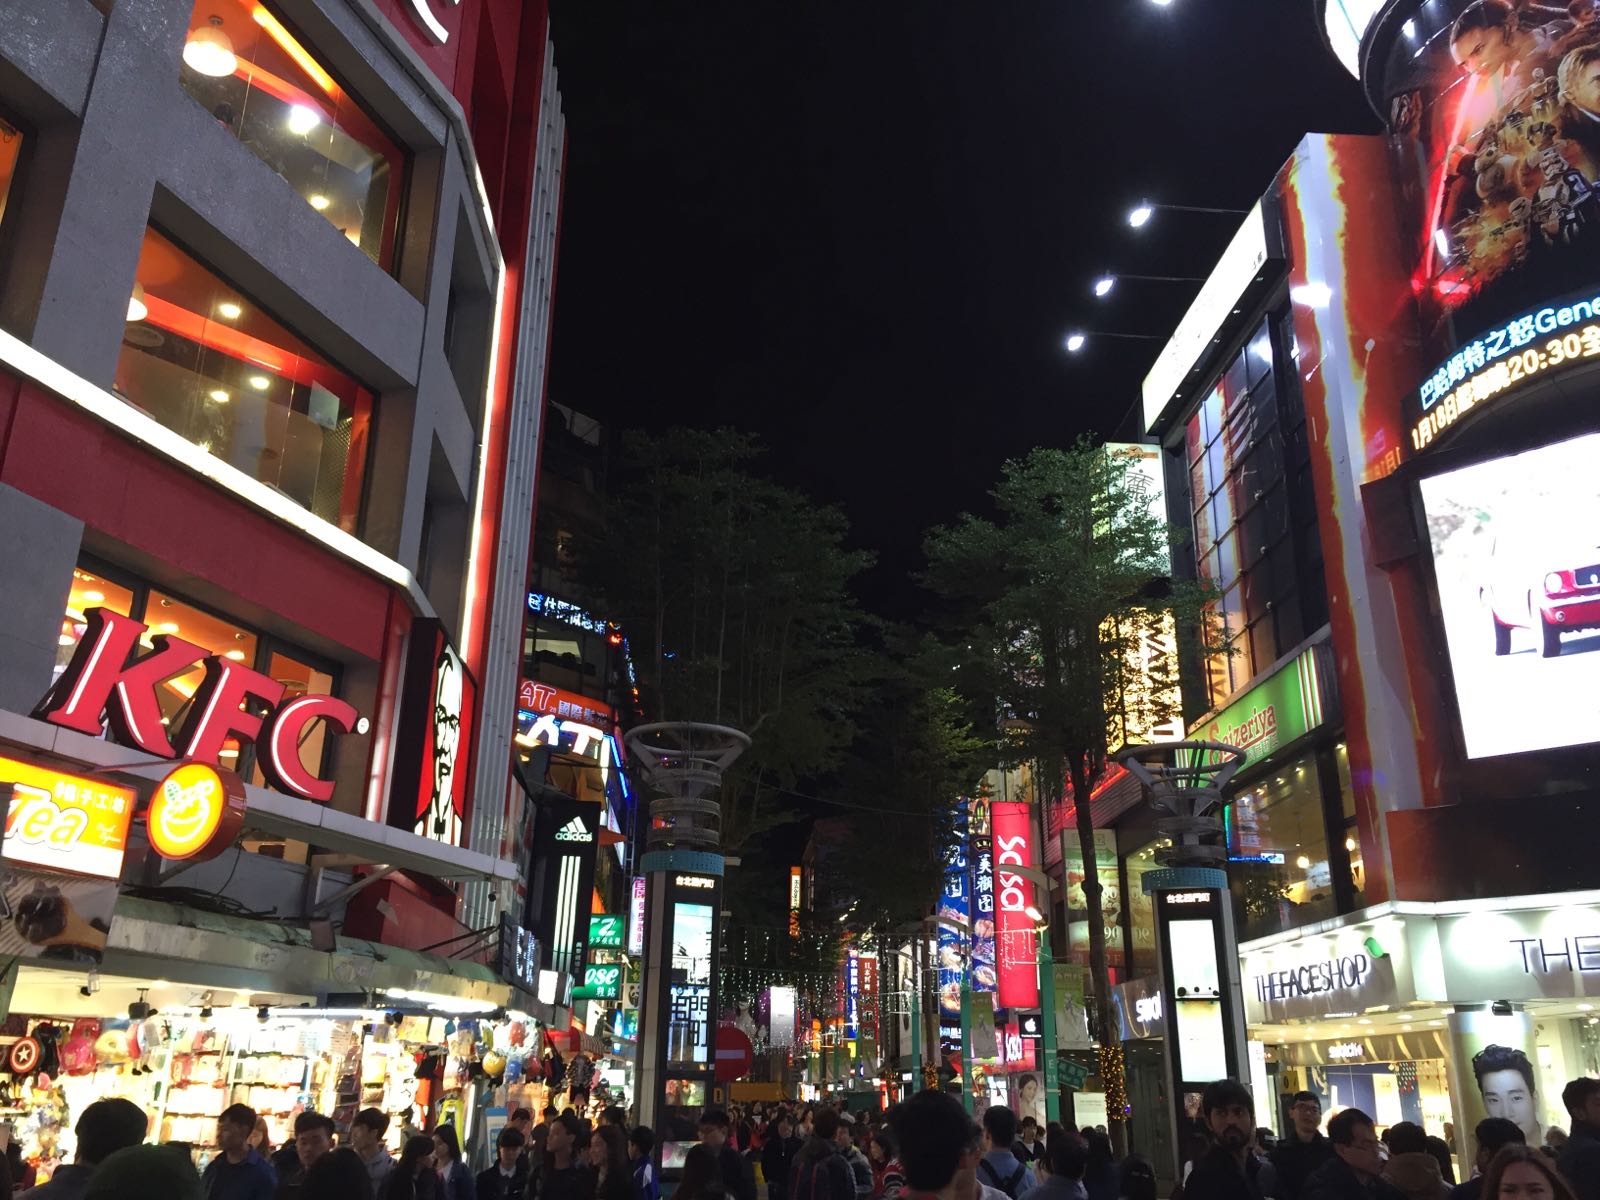 西门町街头非常繁华，会让我一度感觉自己在日本大都市的路口哈哈哈。吃喝玩